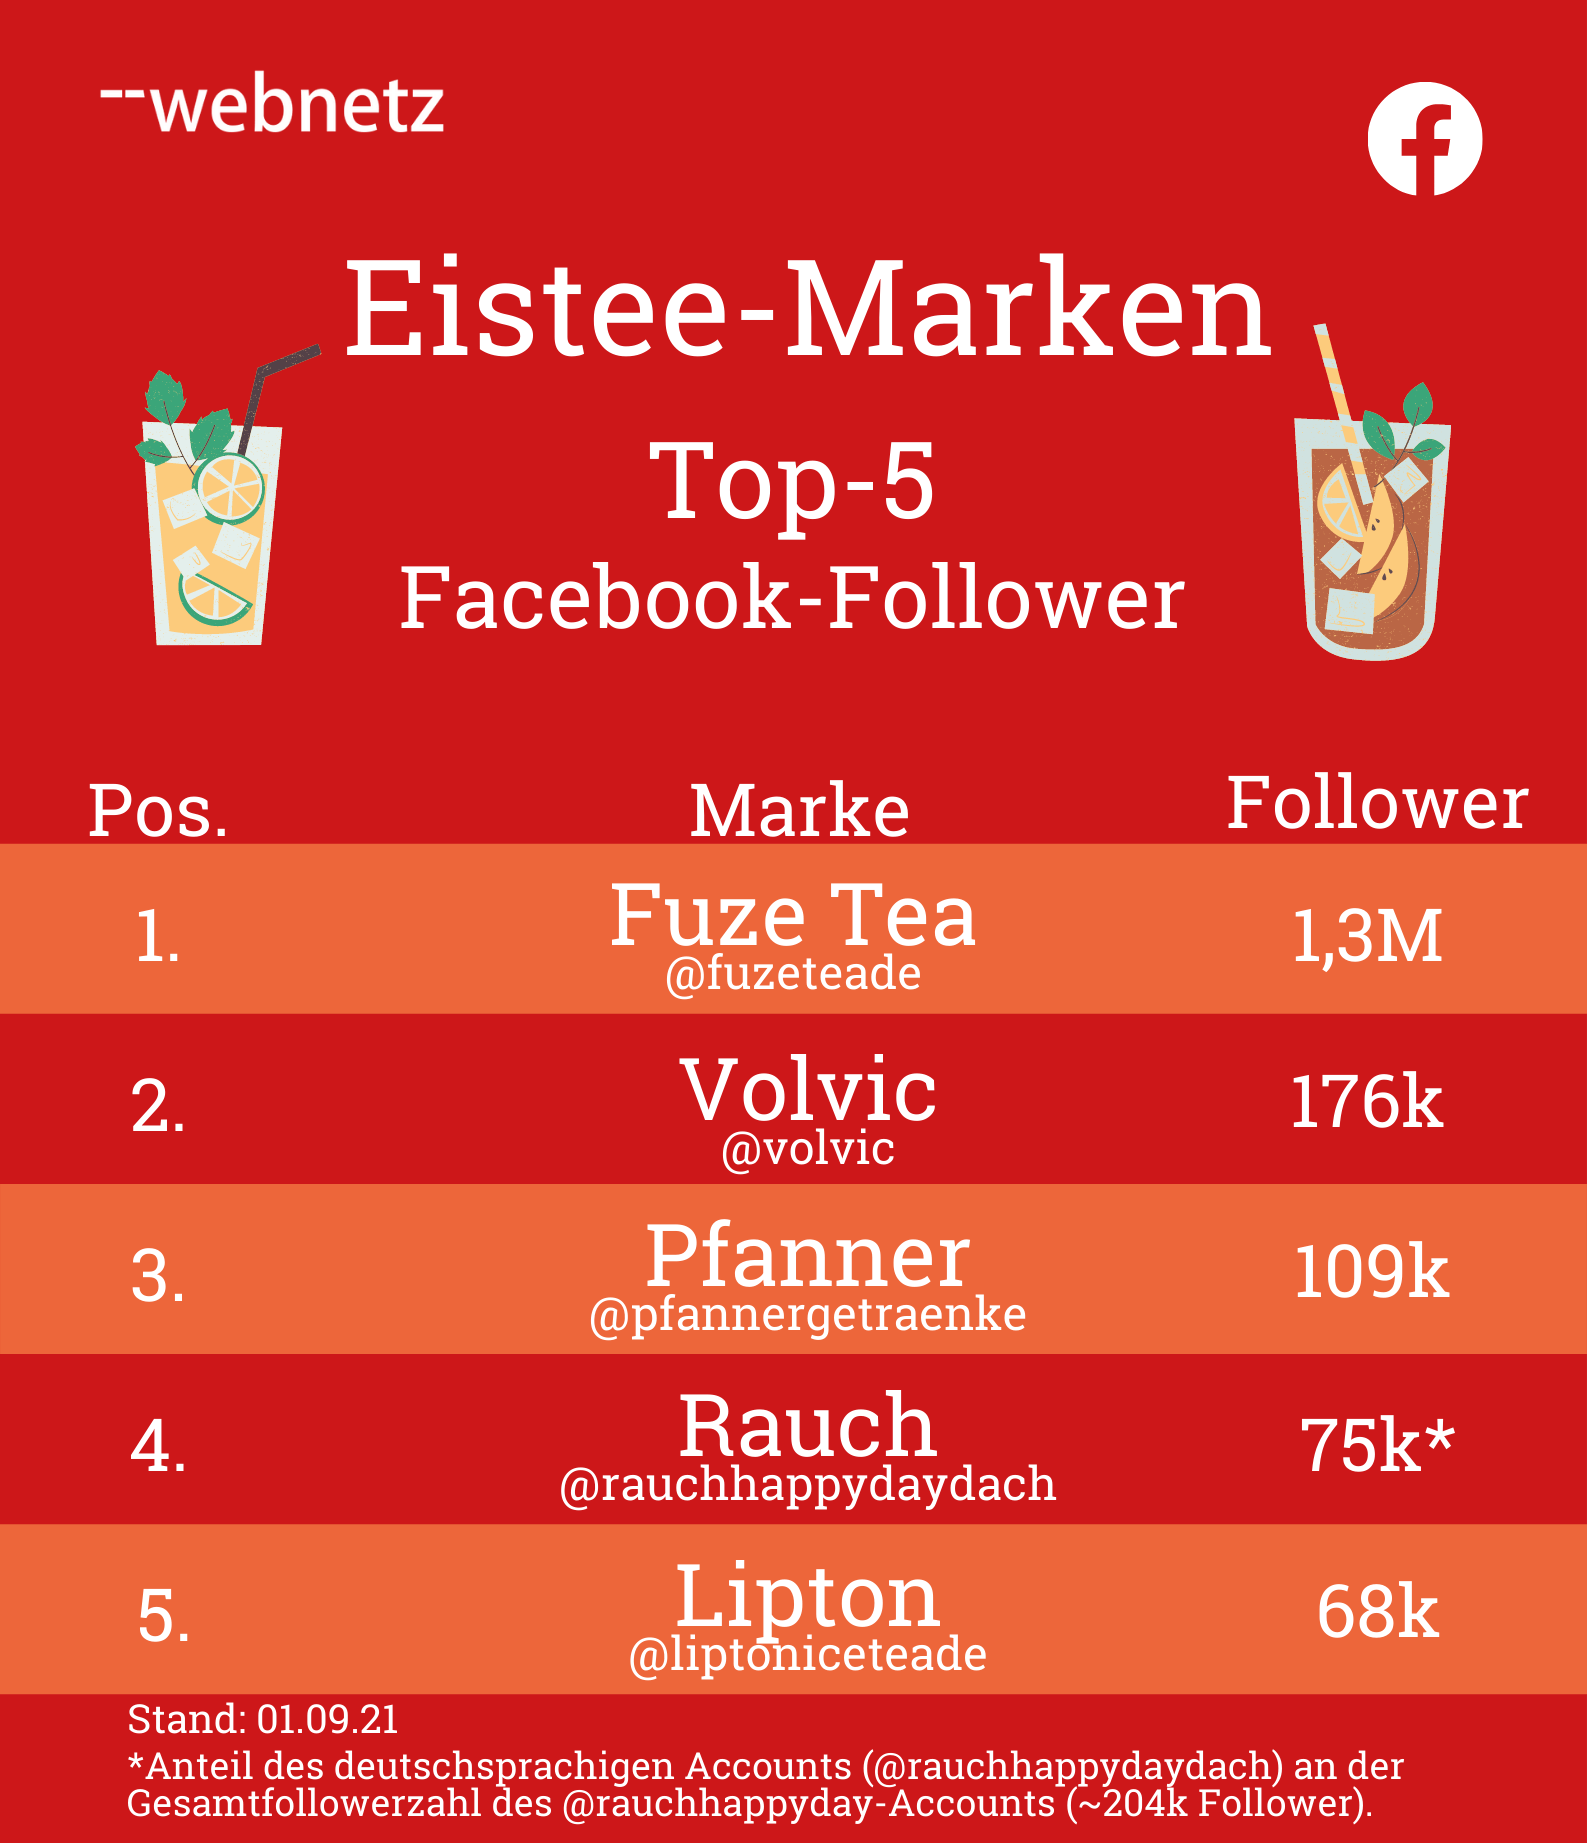 Top 5 Facebook-Follower der Eistee-Marken